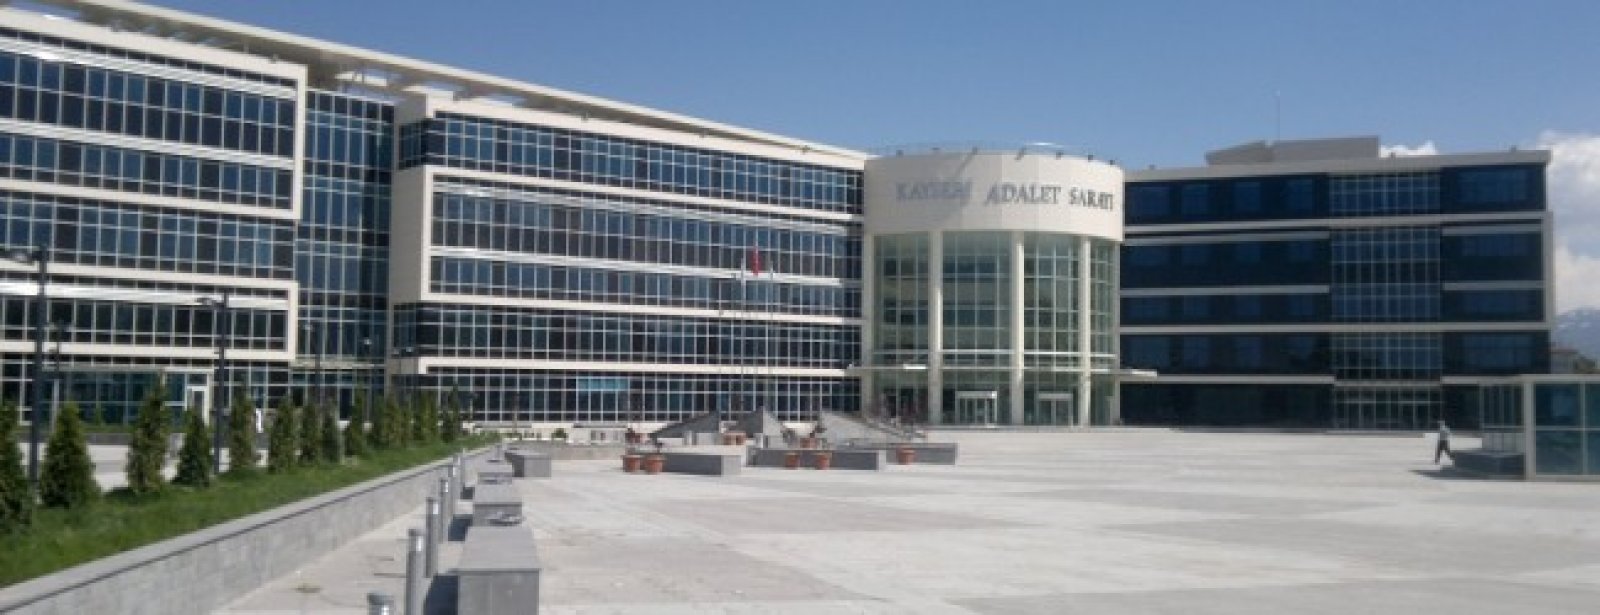 Kayseri Adalet Sarayı